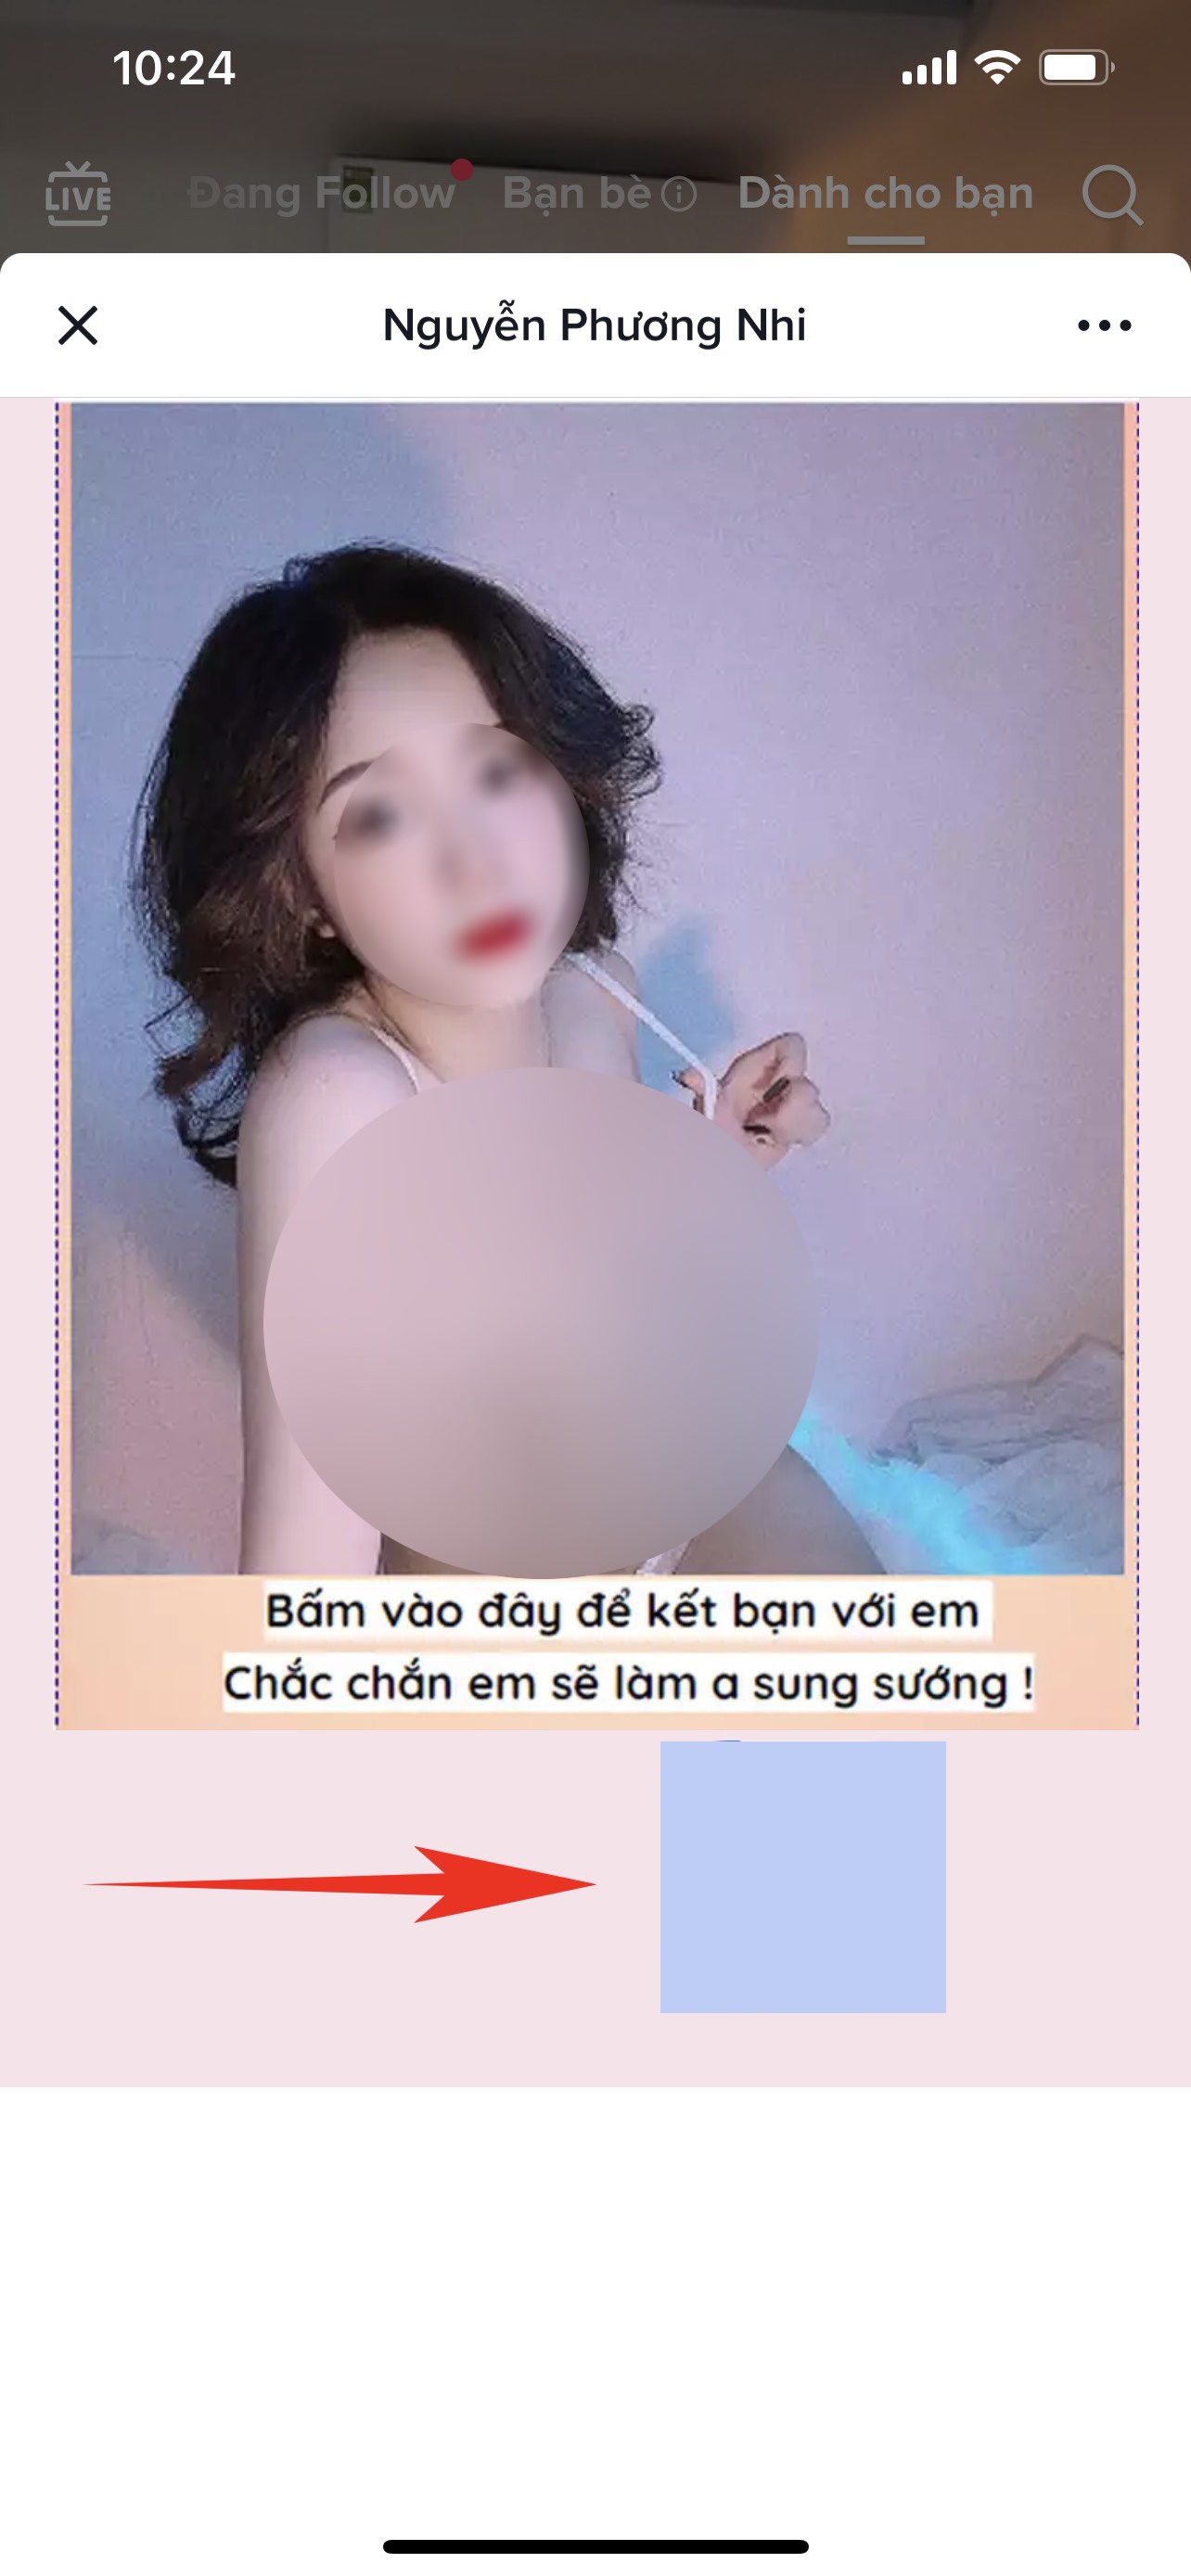 Quảng cáo bán dâm, chợ tình online tràn lan TikTok-1